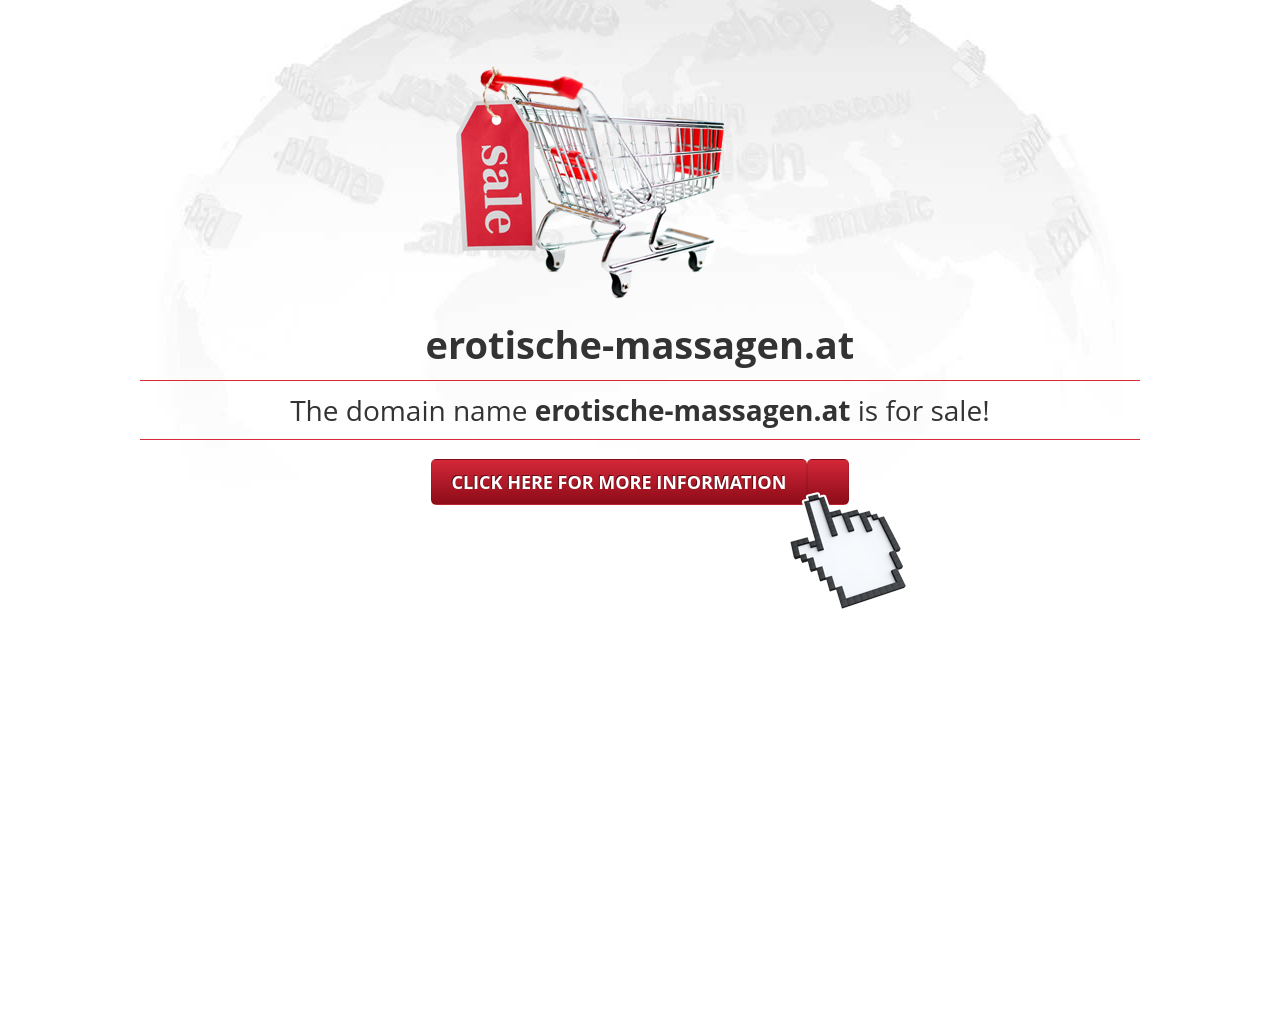 Bild Website erotische-massagen.at in 1280x1024